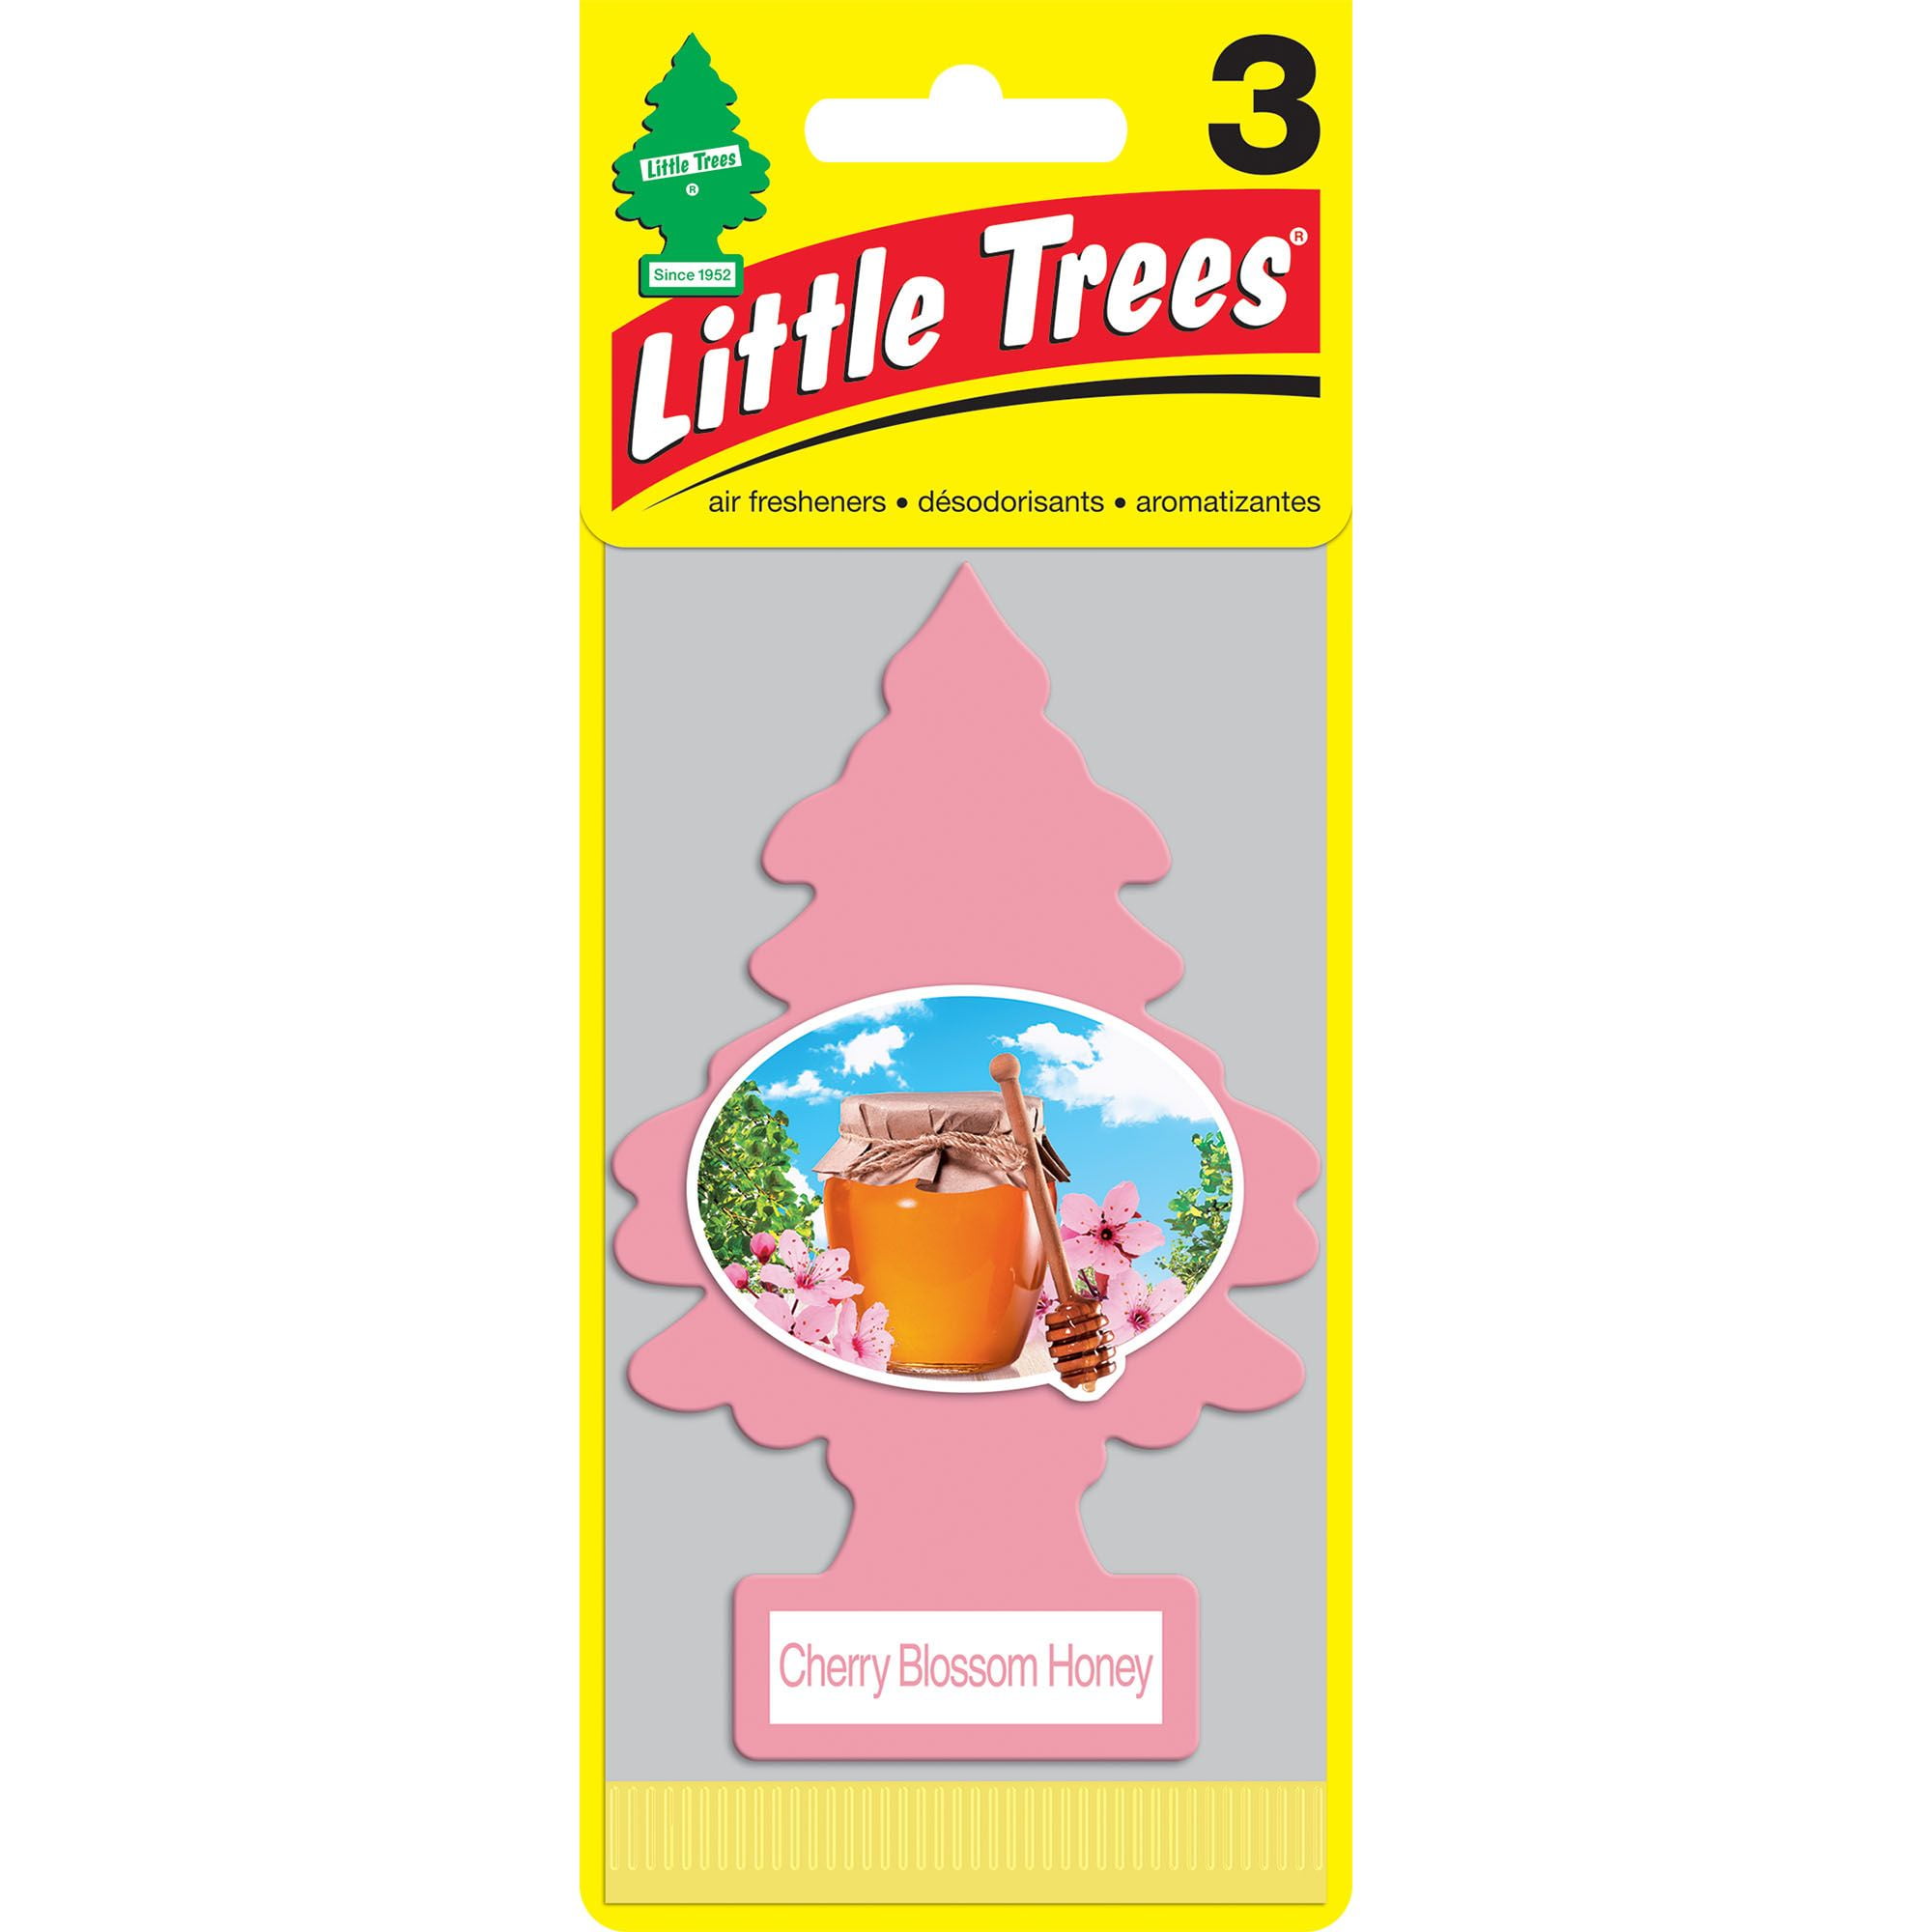 Little Trees Air Freshener Cherry Blossom Honey Fragrance 3-Pack